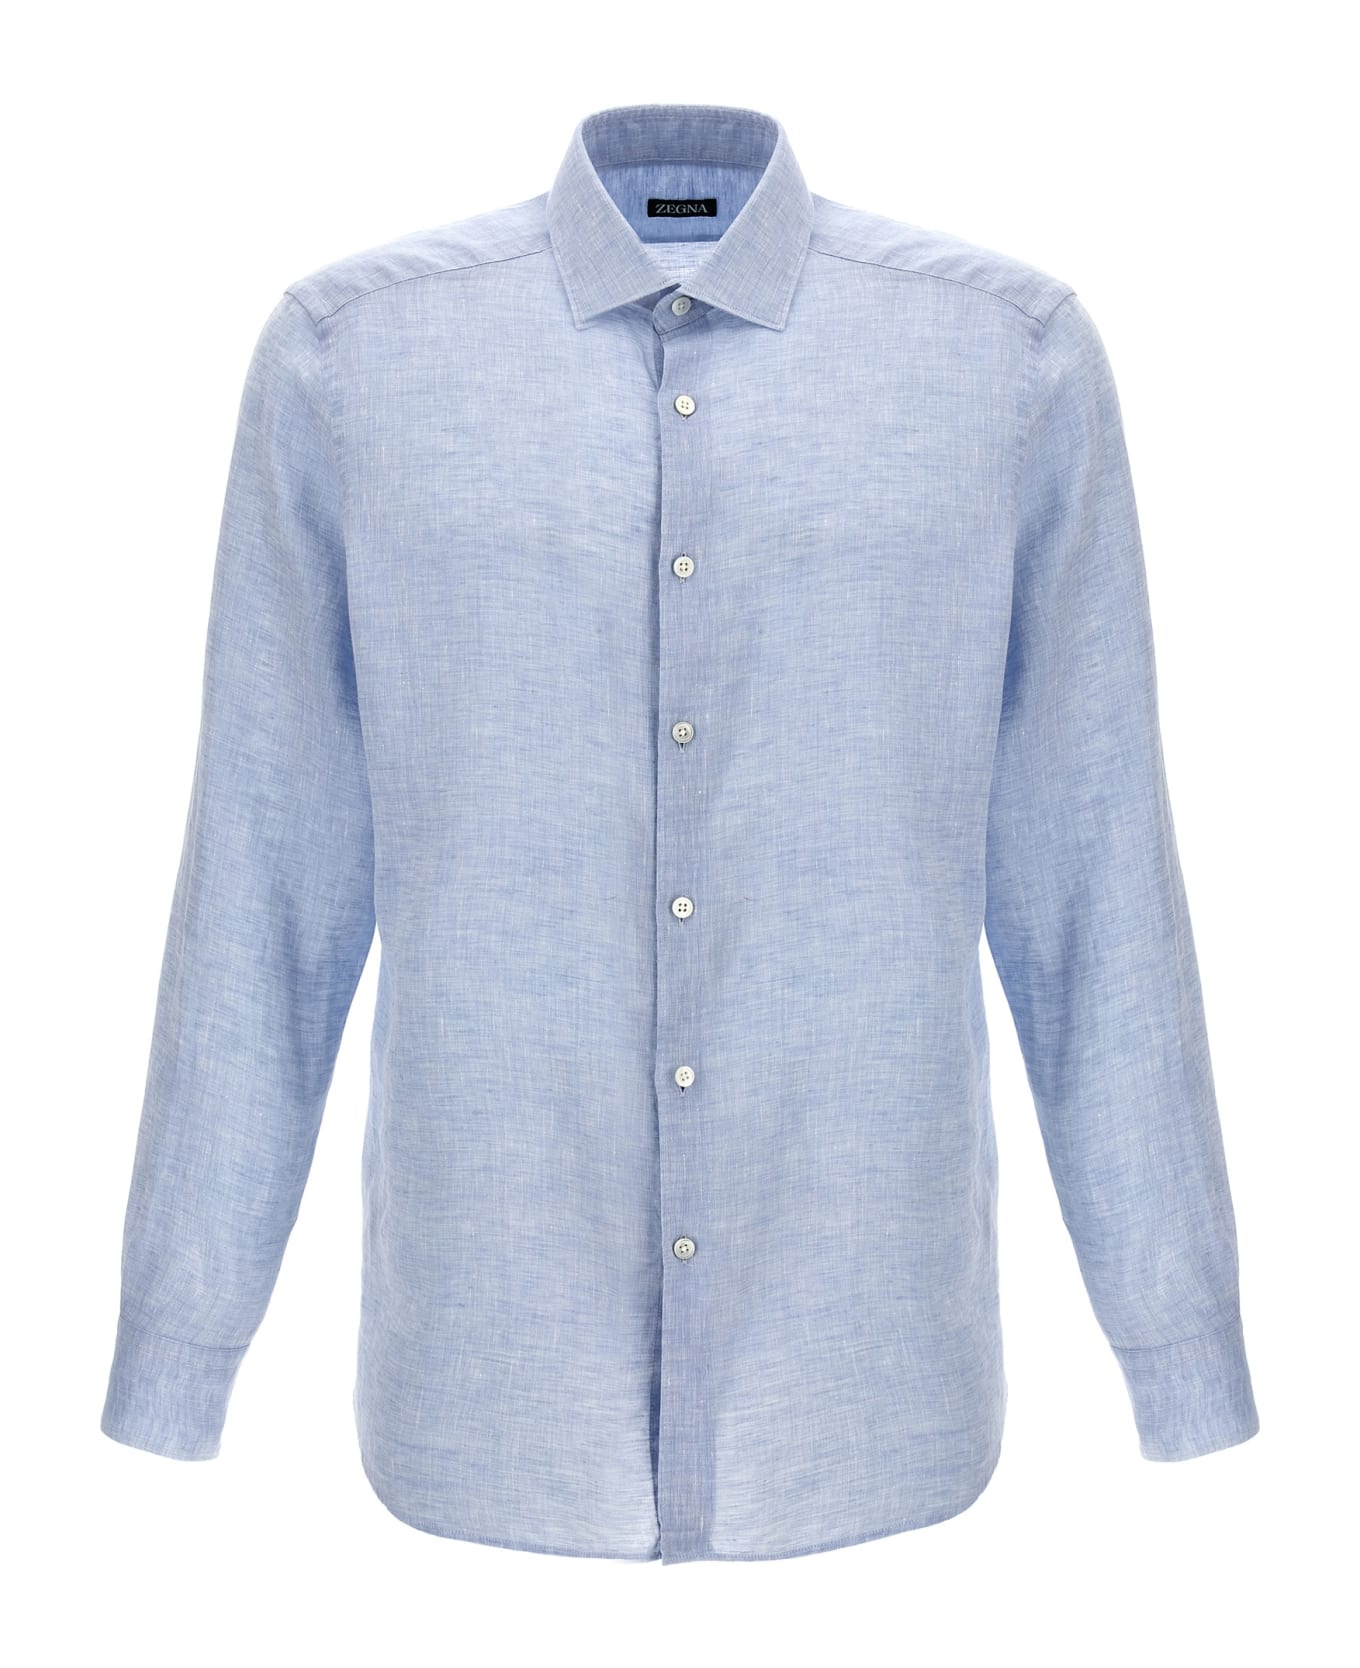 Zegna Linen Shirt - Light Blue